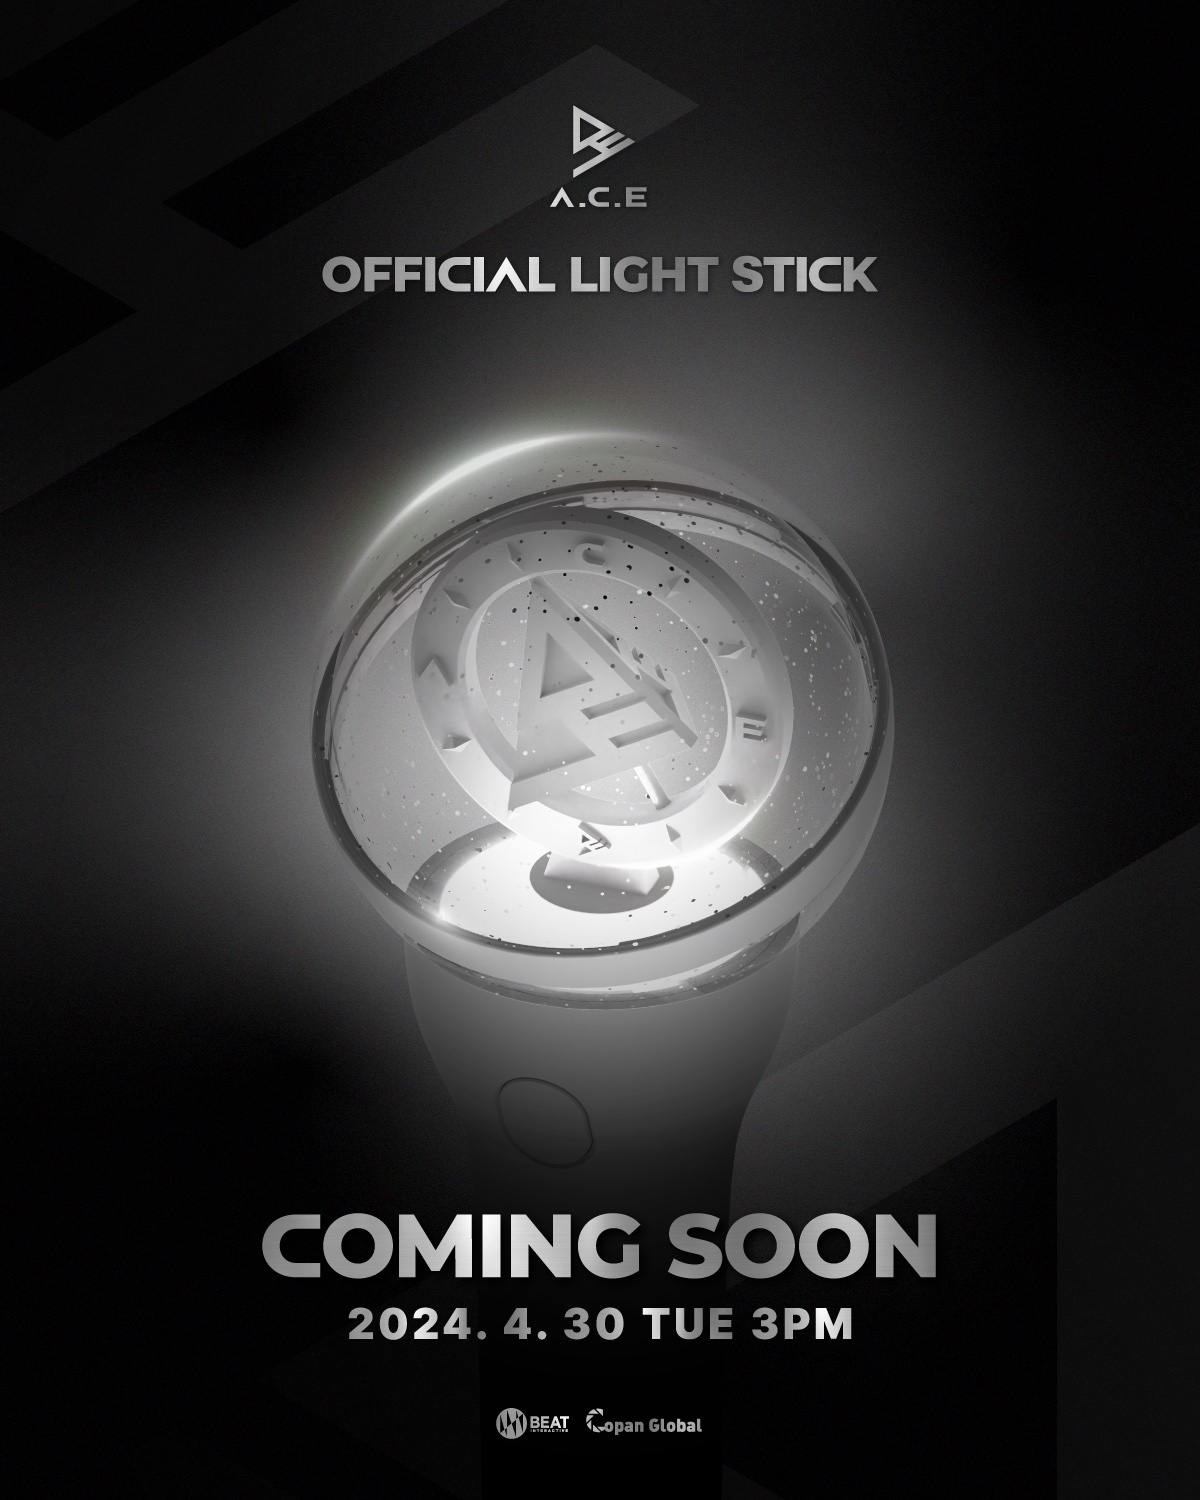 A.C.E Reveals New Version Of Official Light Stick